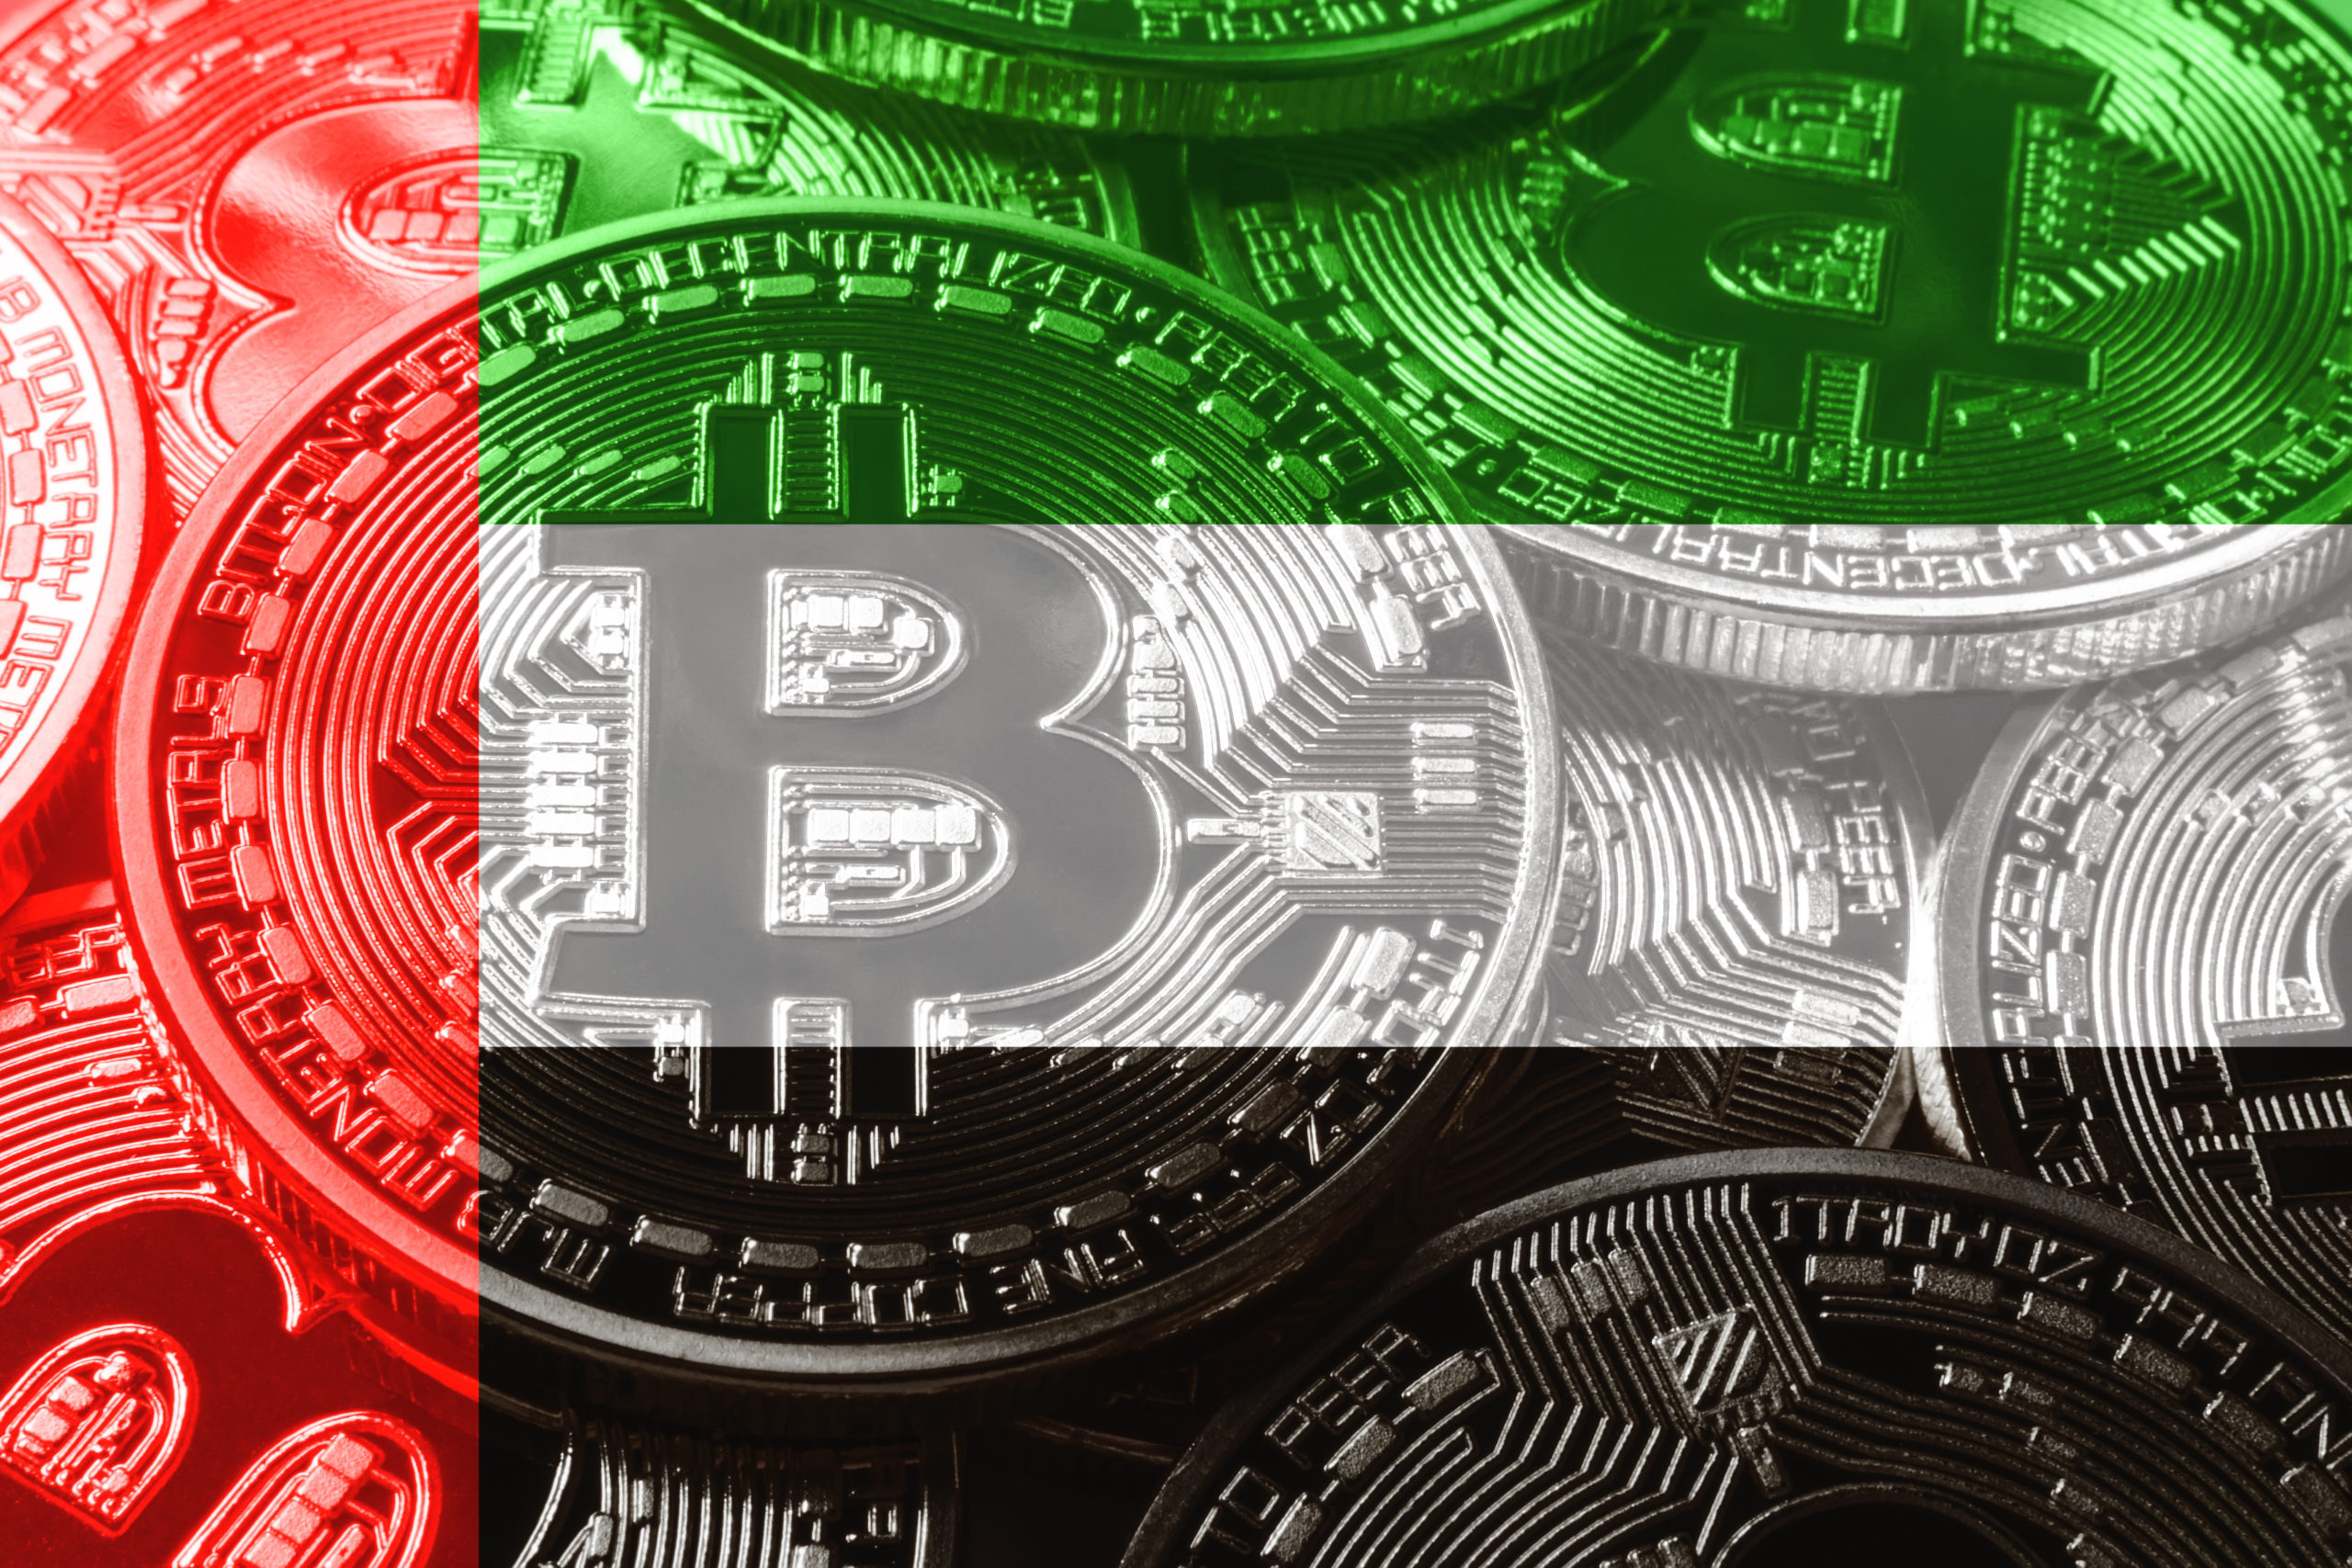 Is Bitcoin Legal in Dubai? - Cryptodesk